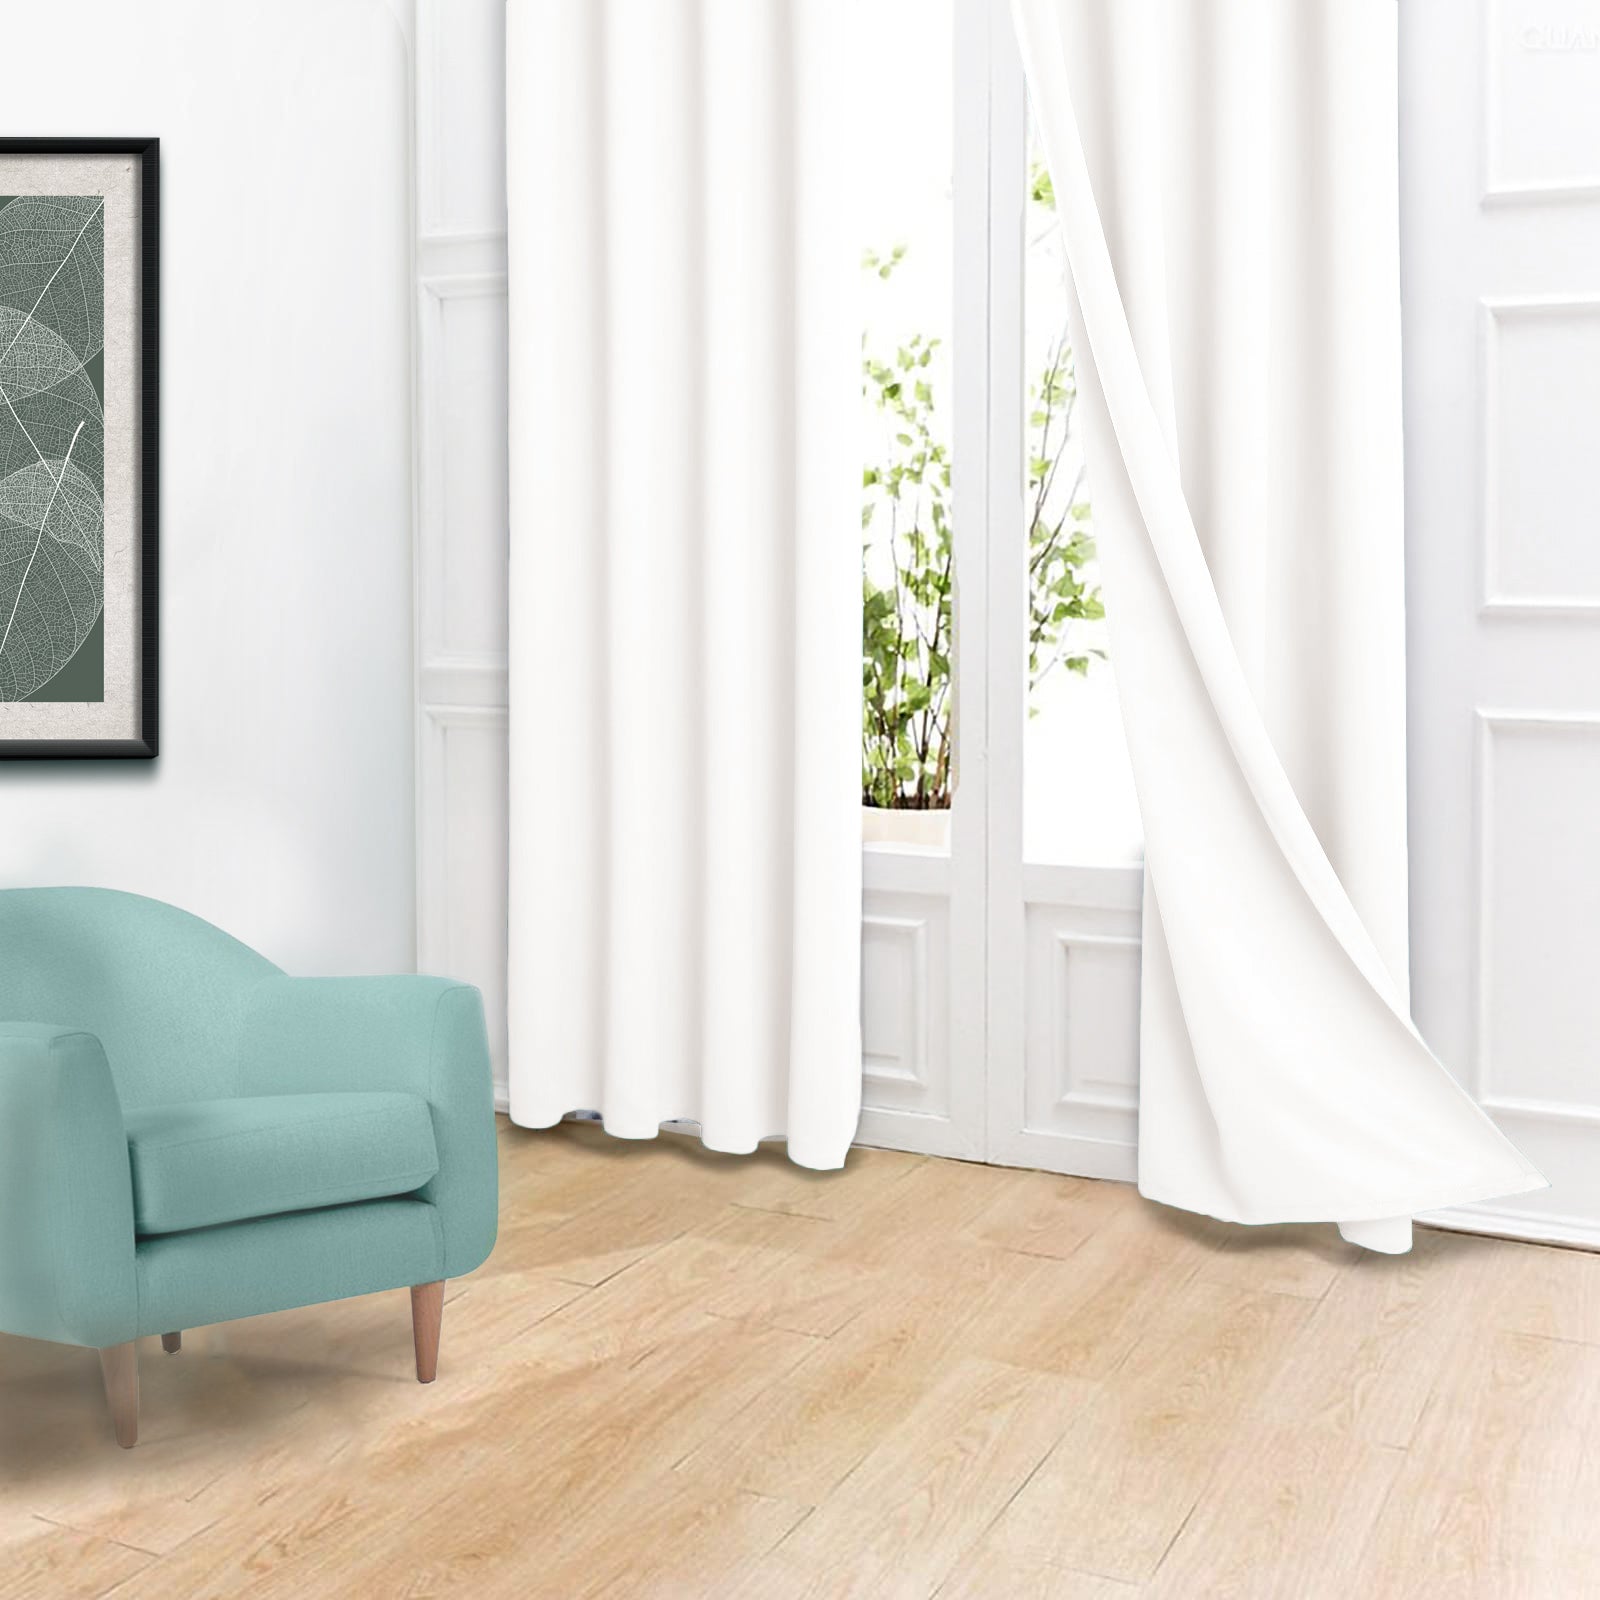 Akarise Blackout Curtains For Bedroom Living Room - 2 Panels, White